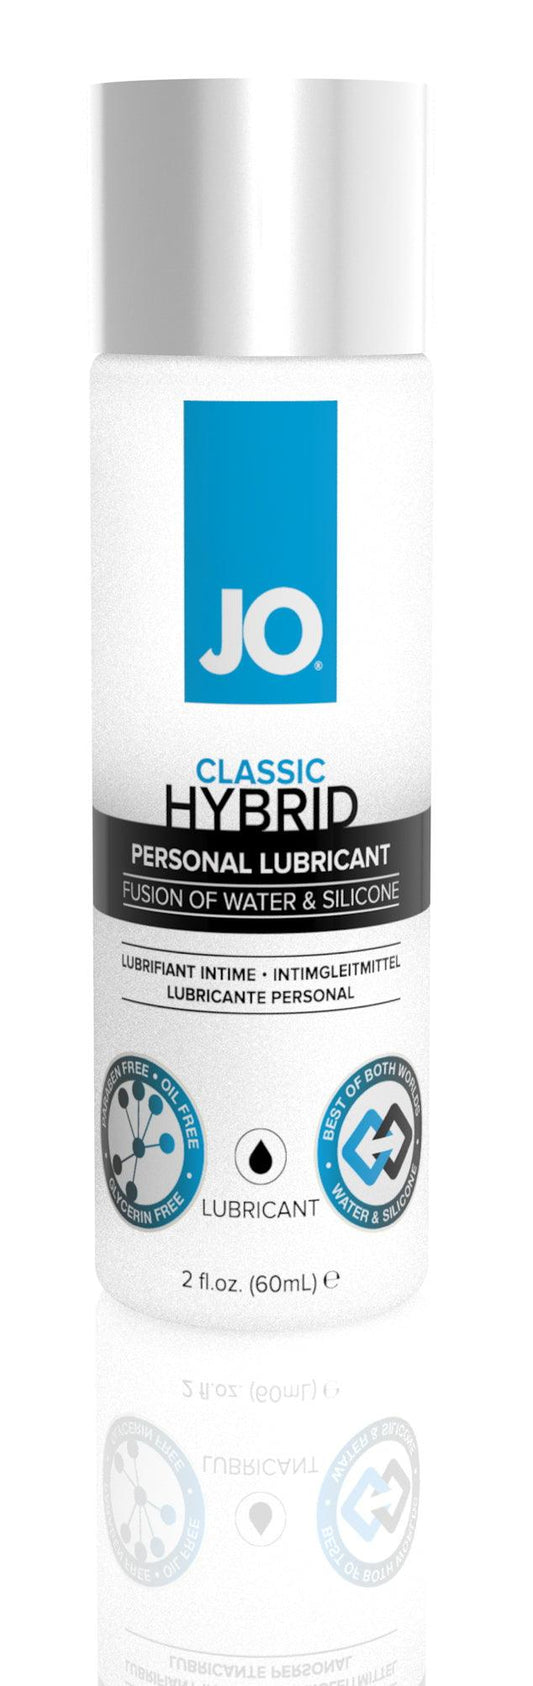 JO Hybrid 2 Oz / 60 ml - Take A Peek